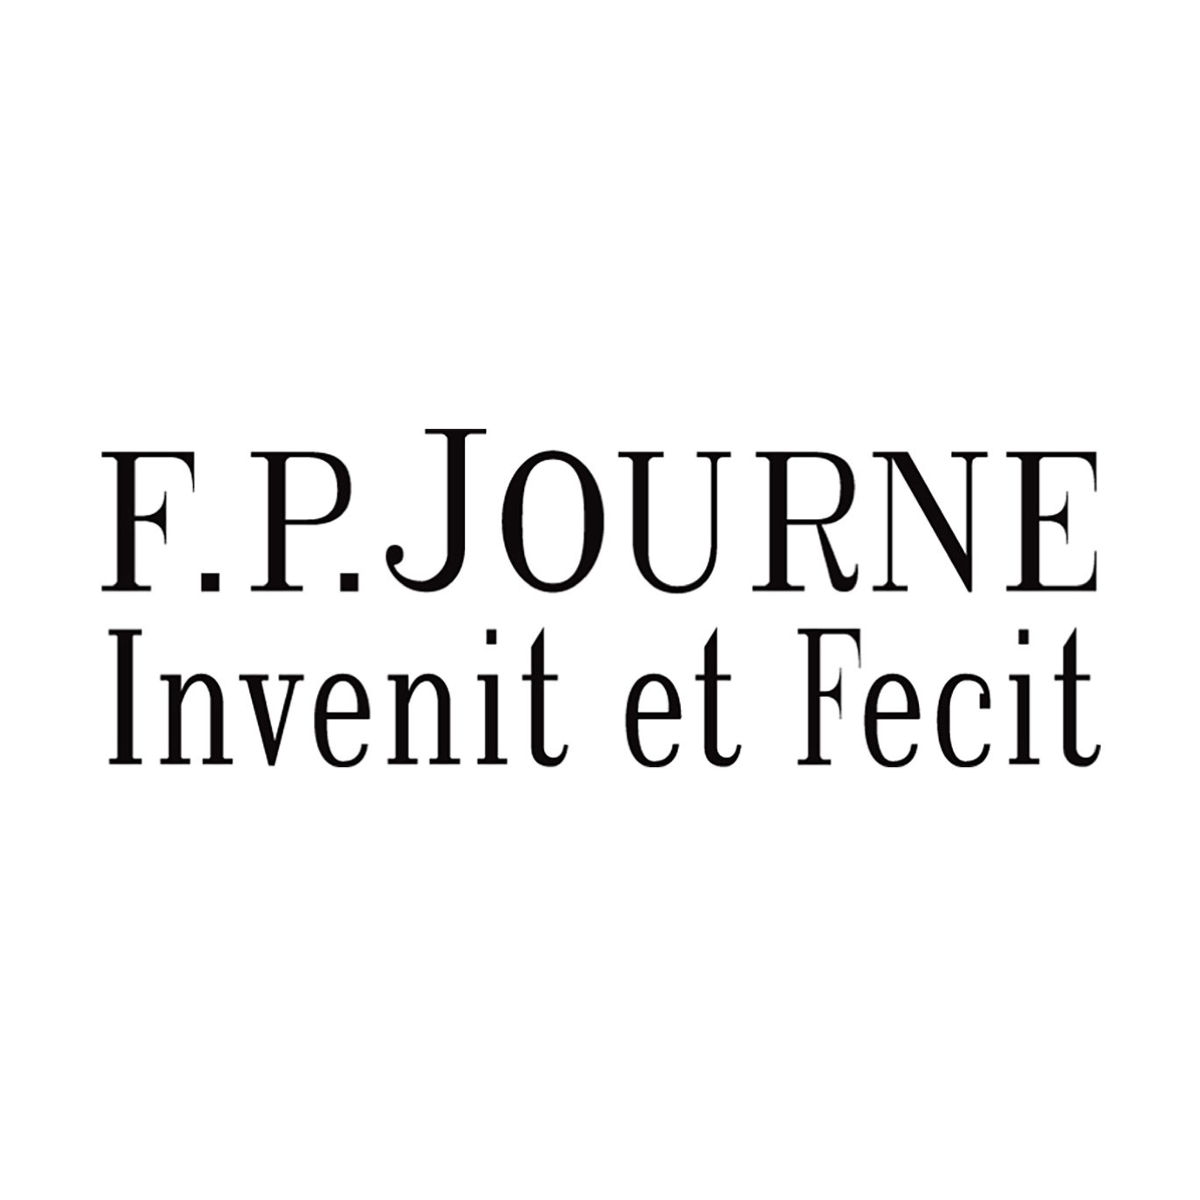 F.P.Journe